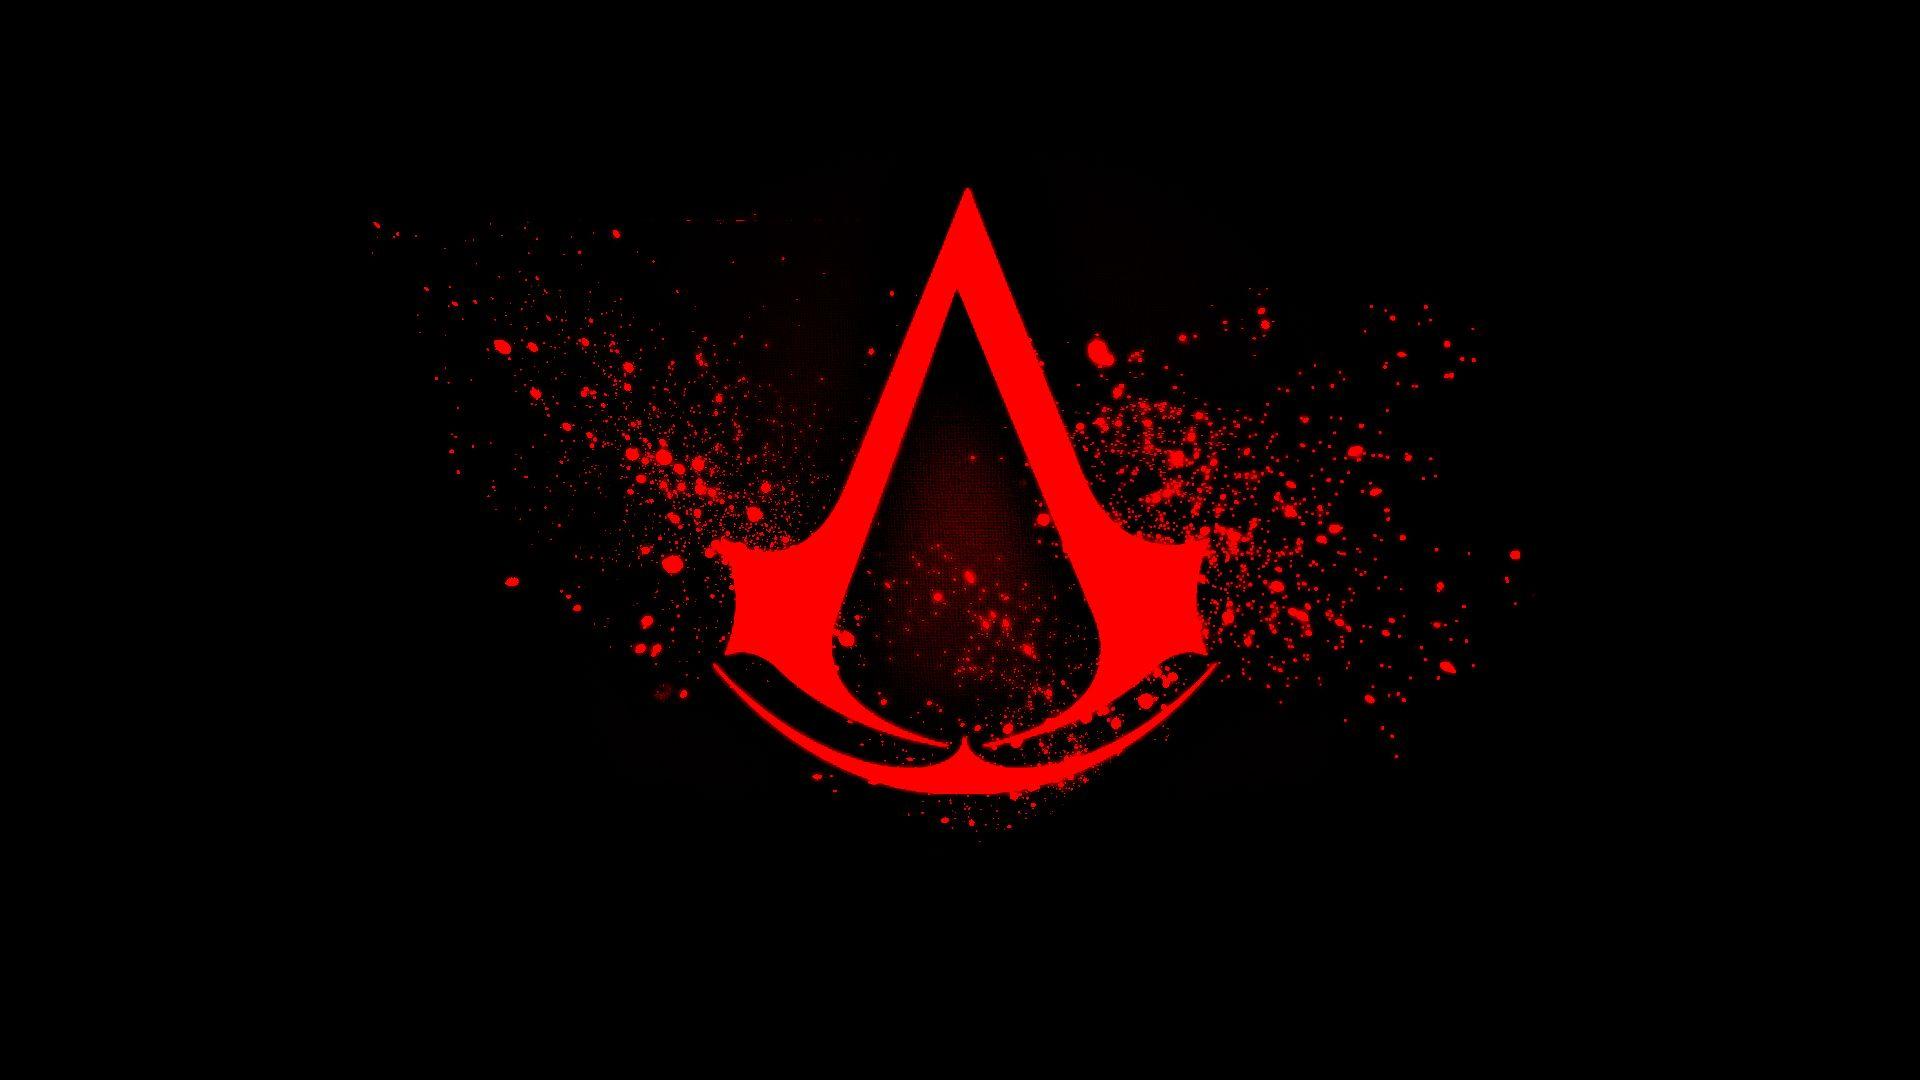 Download the Assassins Creed Splatter Wallpaper, Assassins Creed